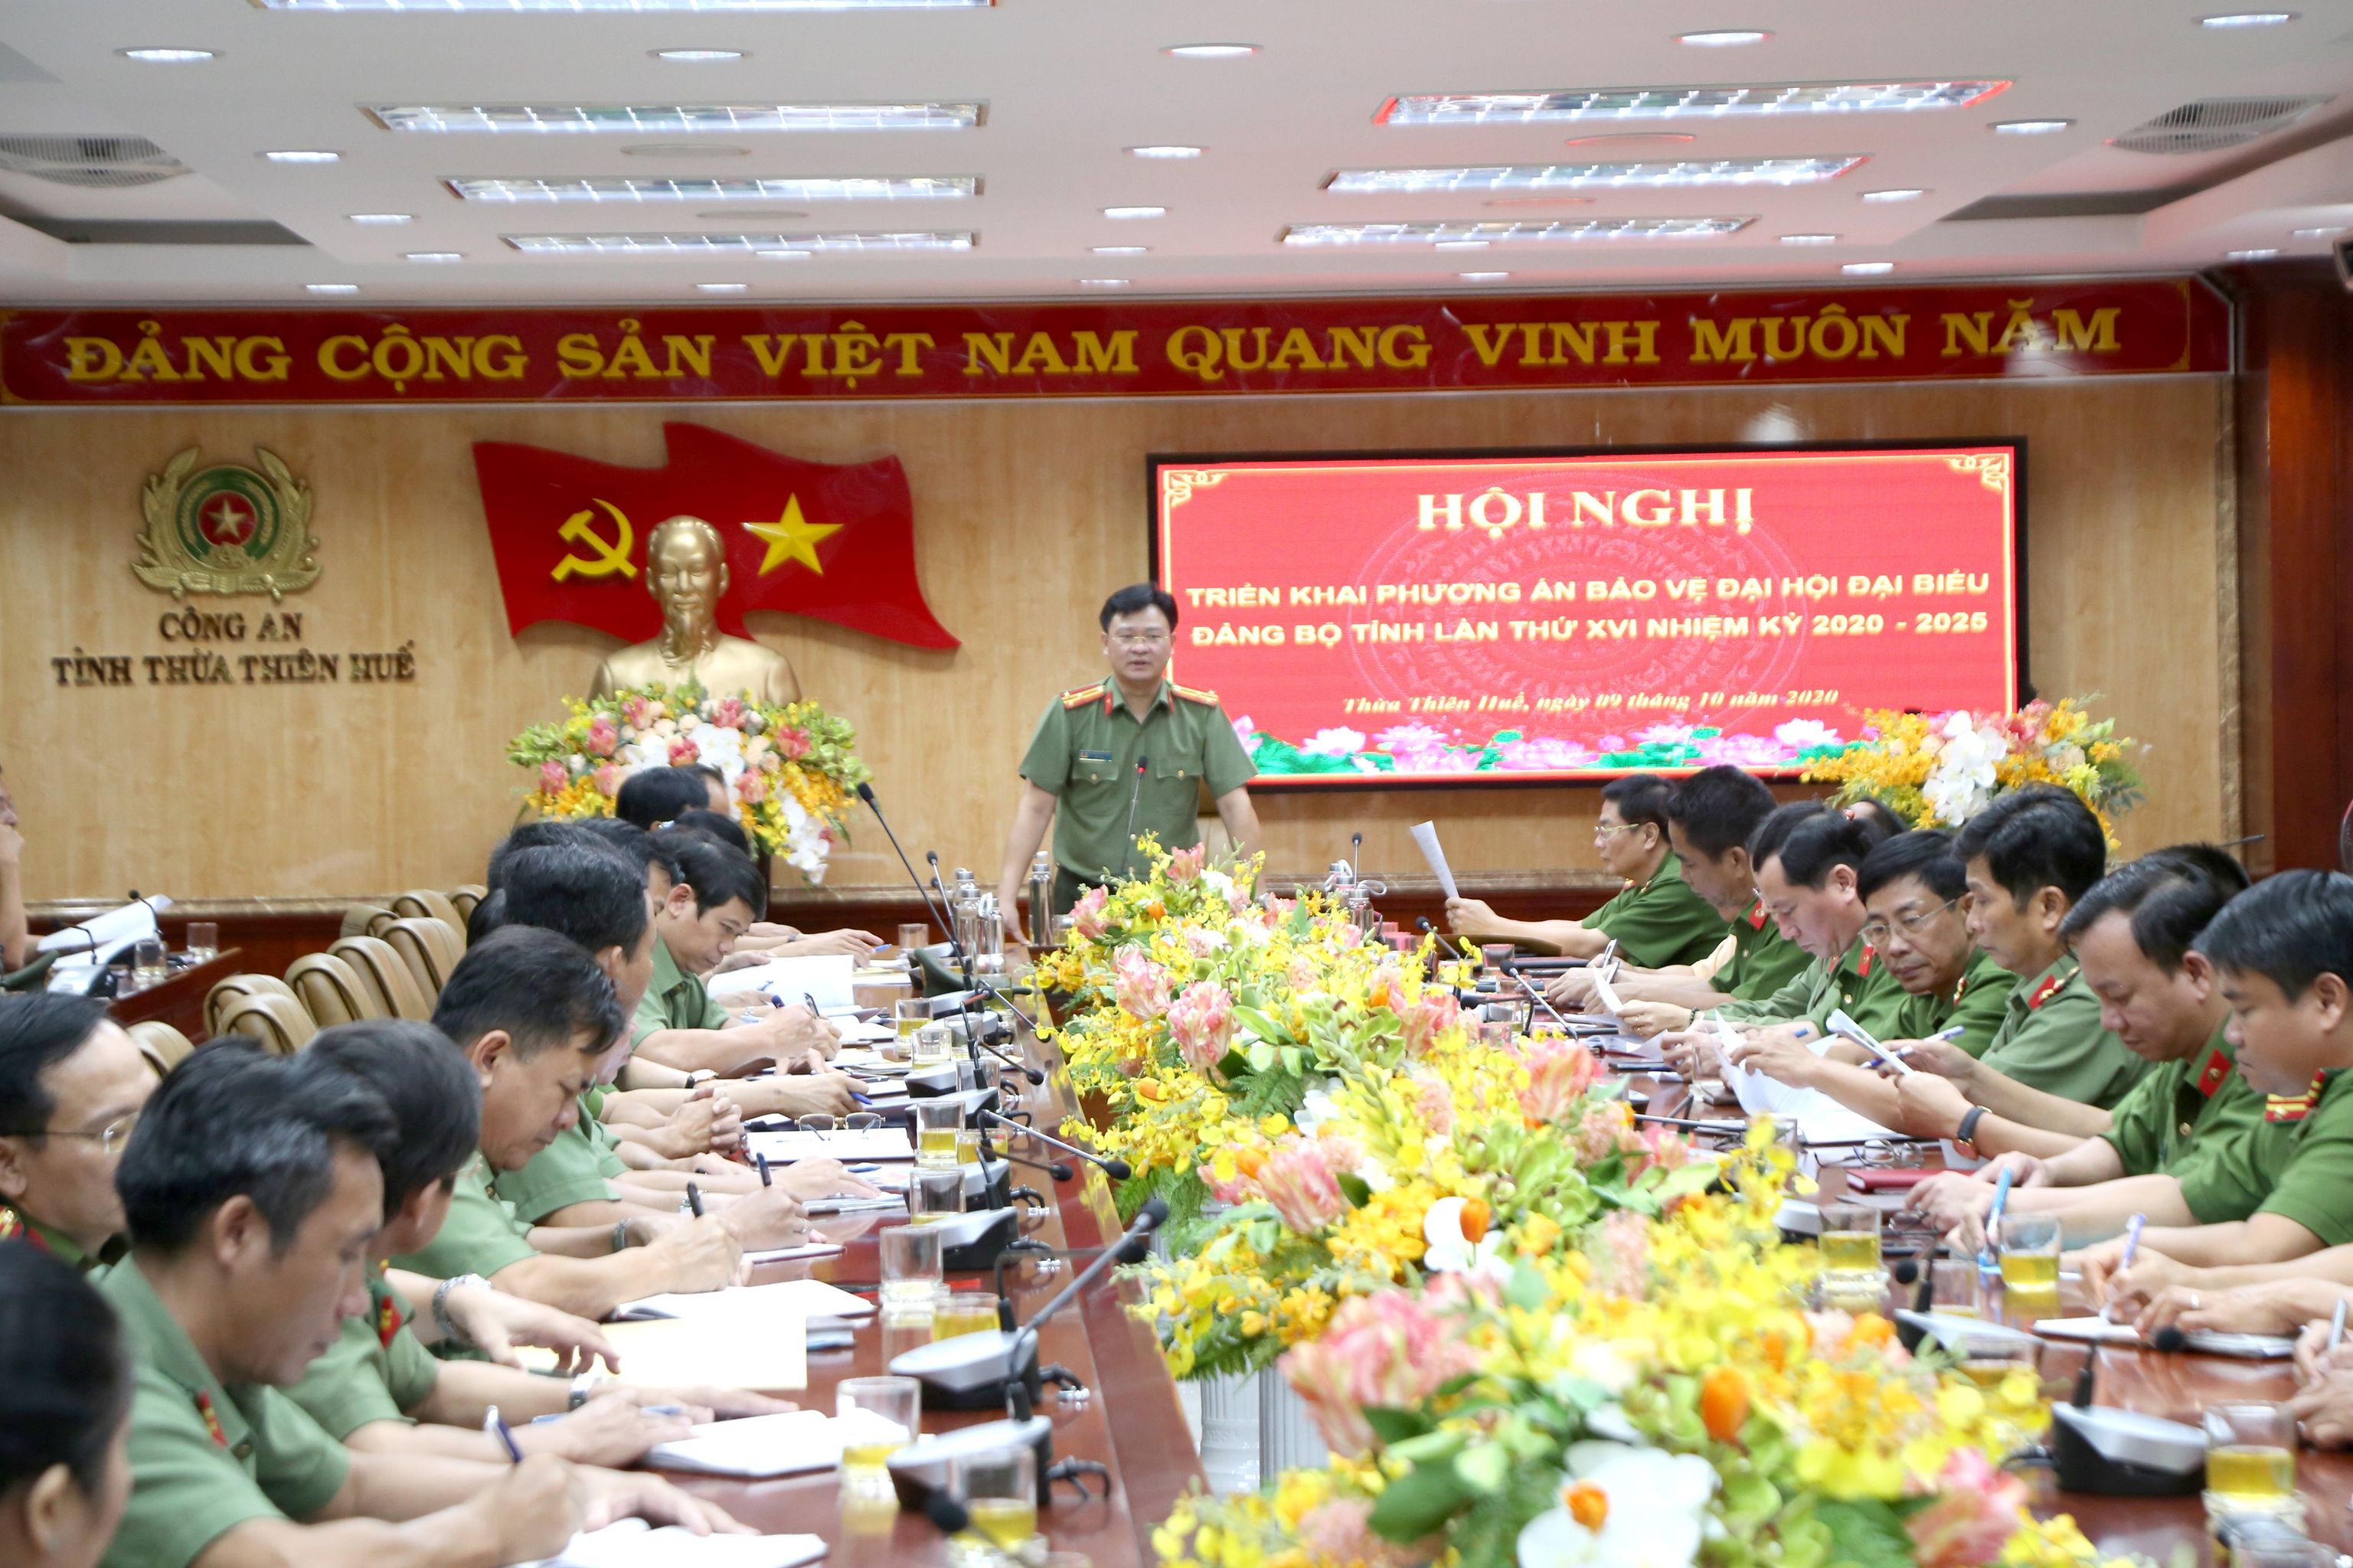 Công an tỉnh Thừa Thiên - Huế triển khai phương án bảo vệ Đại hội Đại biểu Đảng bộ tỉnh lần thứ XVI nhiệm kỳ 2020 - 2025.